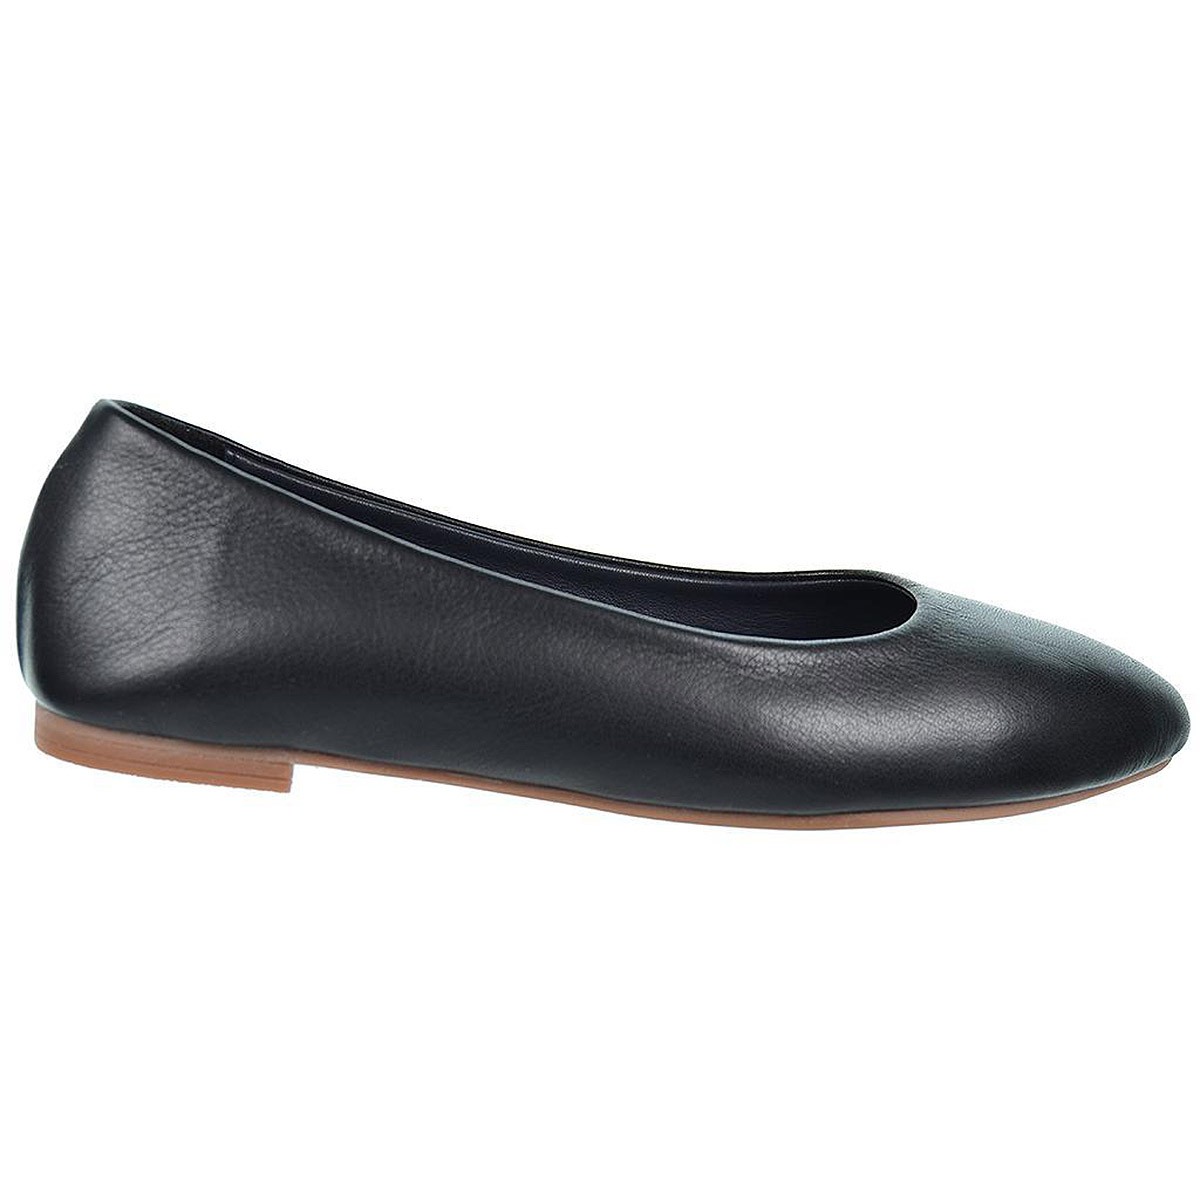 Zapato salón en piel y piso de goma antideslizante, muy ligero y flexible.